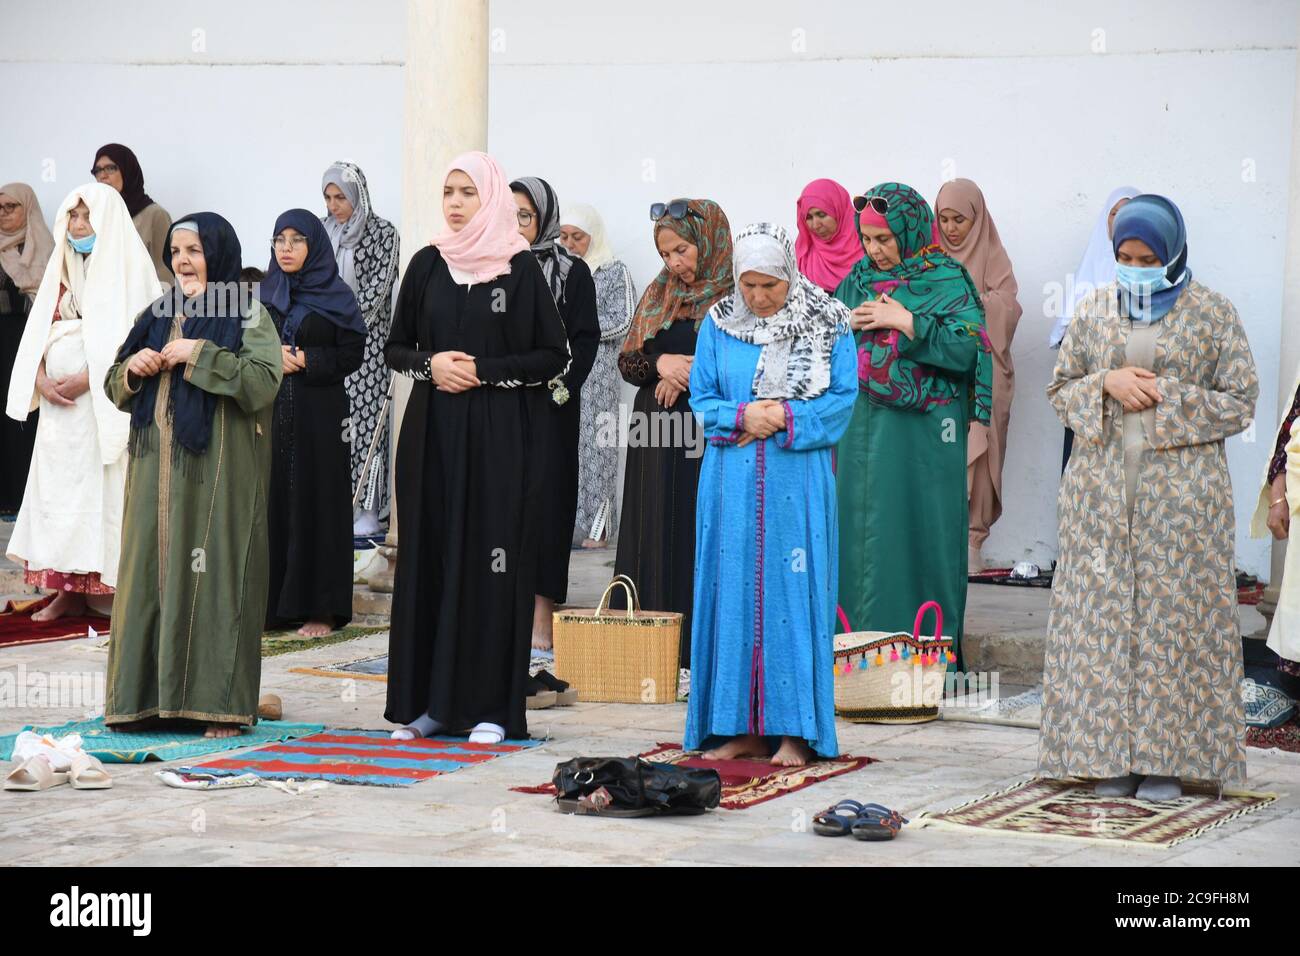 Tunis, Tunisie. 31 juillet 2020. Les Tunisiens assistent aux prières d'Eid al-Adha dans une mosquée de Tunis, en Tunisie, le 31 juillet 2020. Crédit: Adel Ezzine/Xinhua/Alamy Live News Banque D'Images